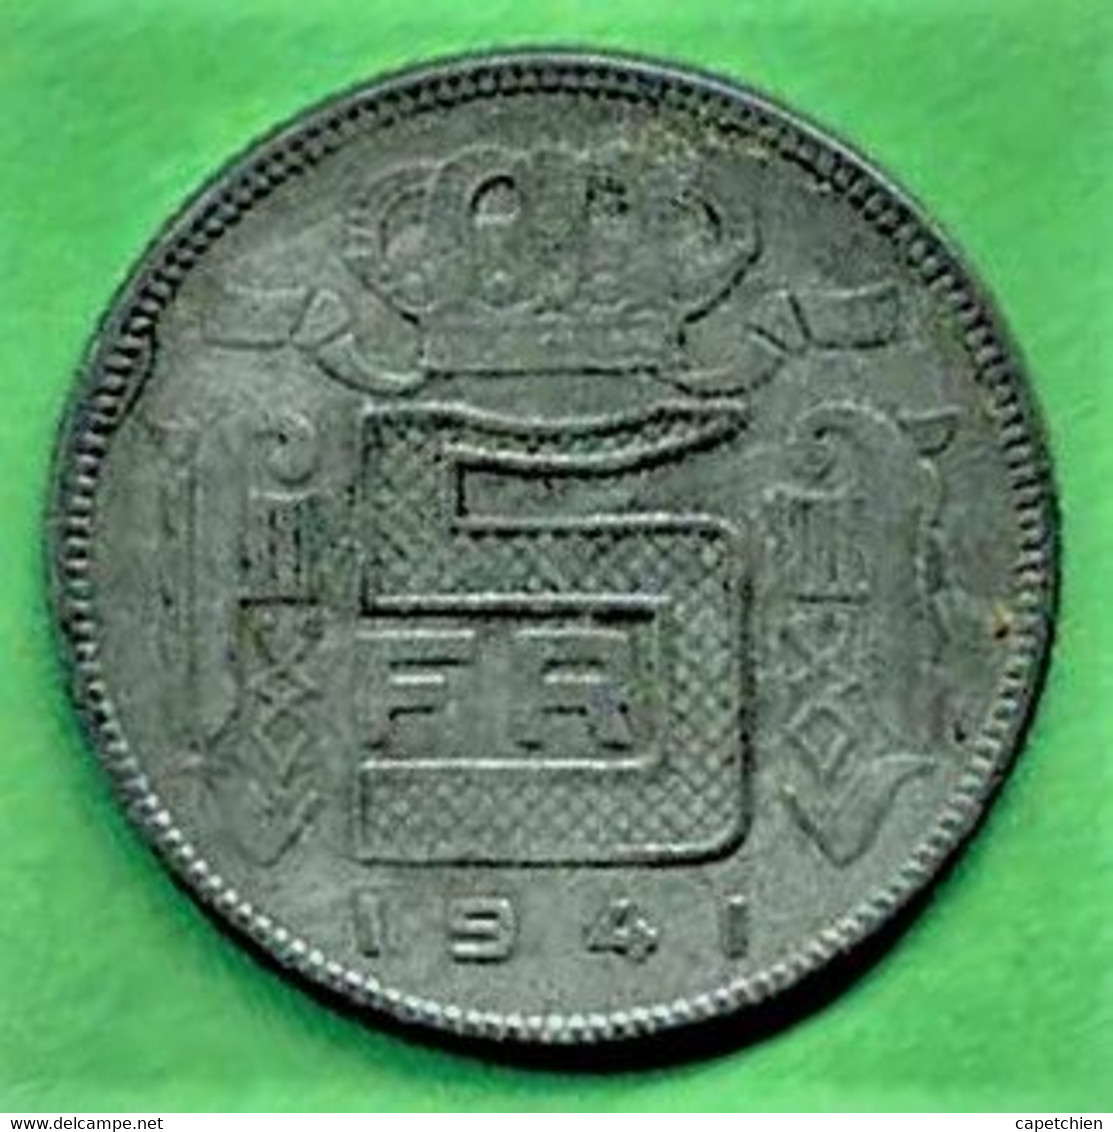 BELGIQUE / LEOPOLD III / 5 FRANCS / 1941 / ZINC - 5 Francs